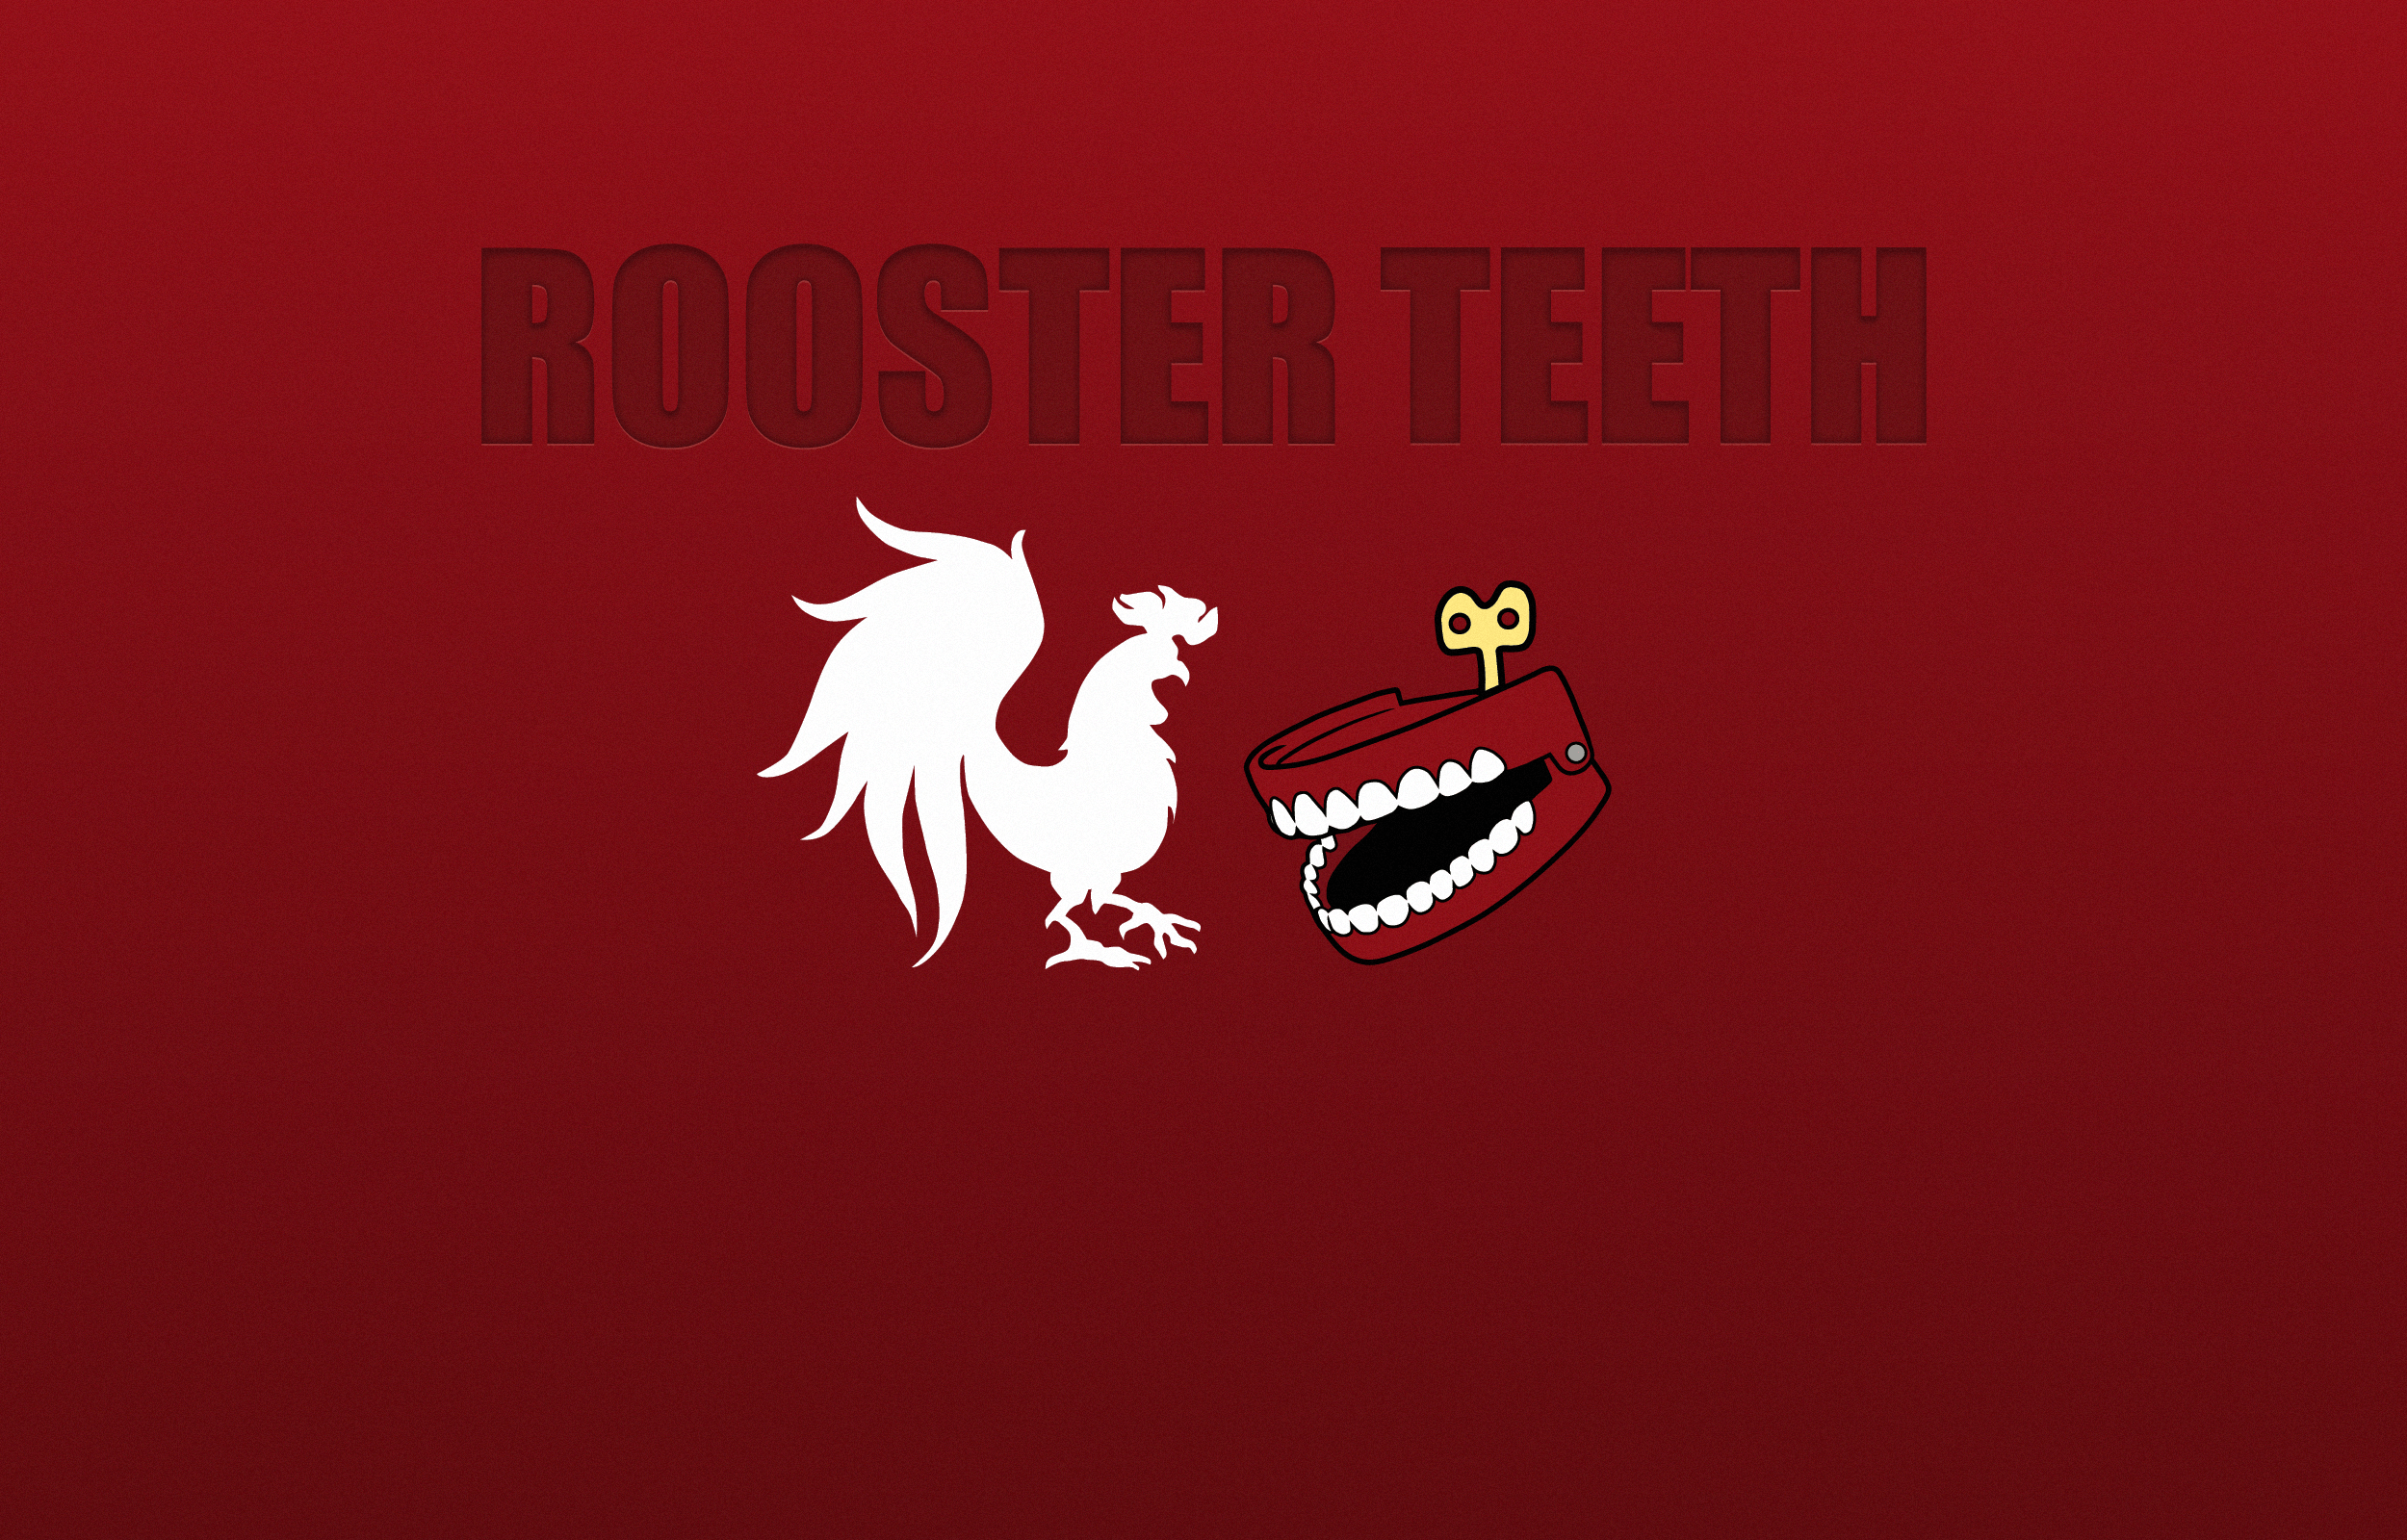 Rooster Teeth Wallpaper